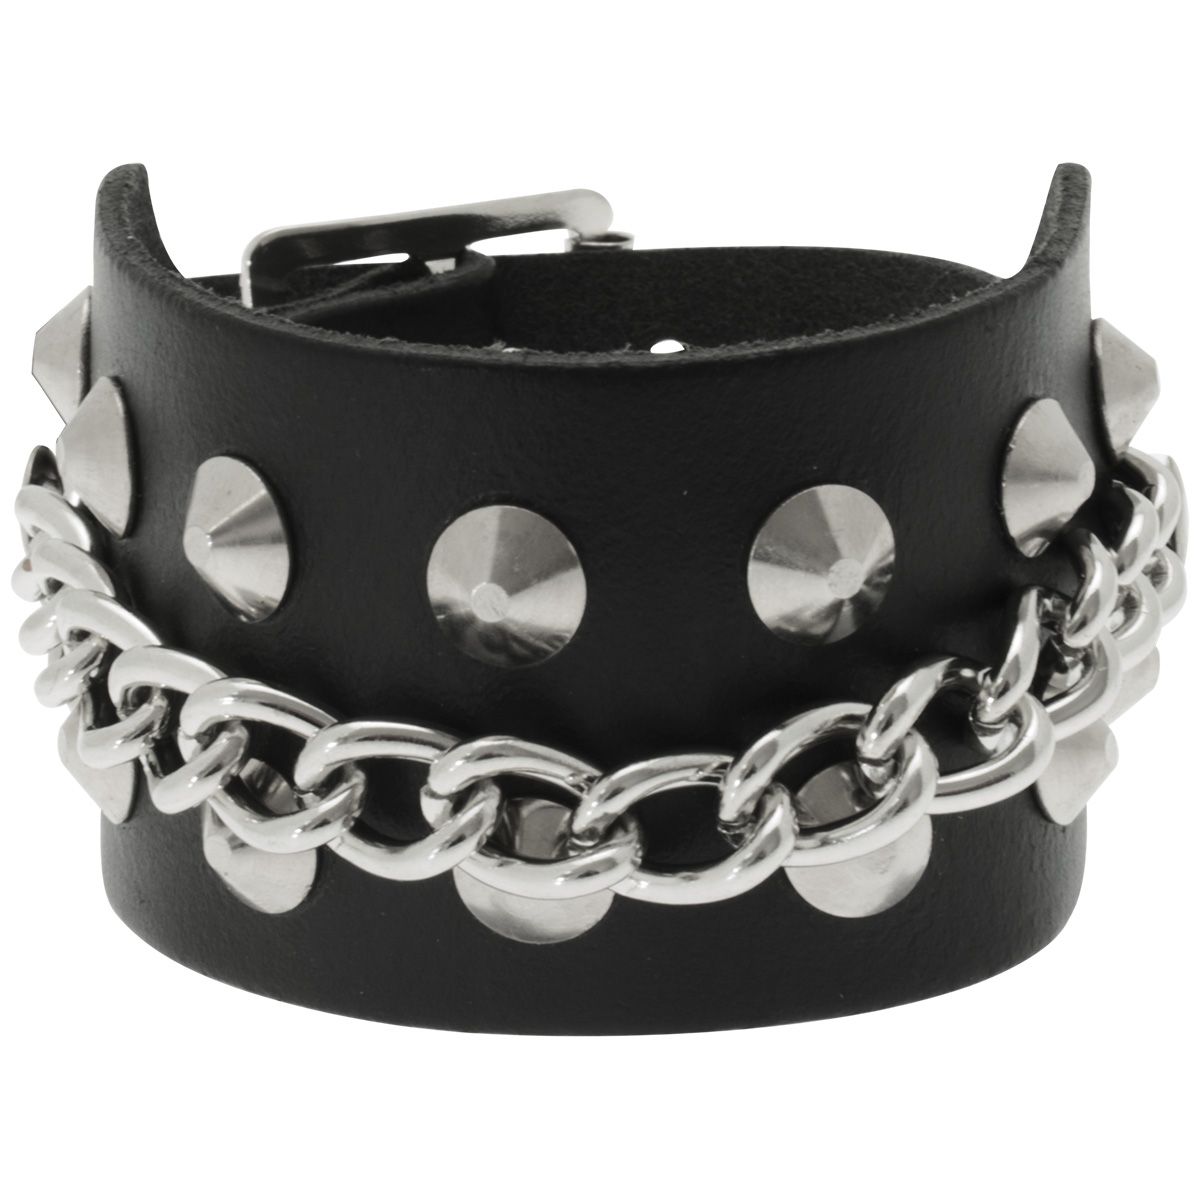 RJ29-bracelet-cuir-spikes-cones-chaine-2-rangees-1279206335.jpg